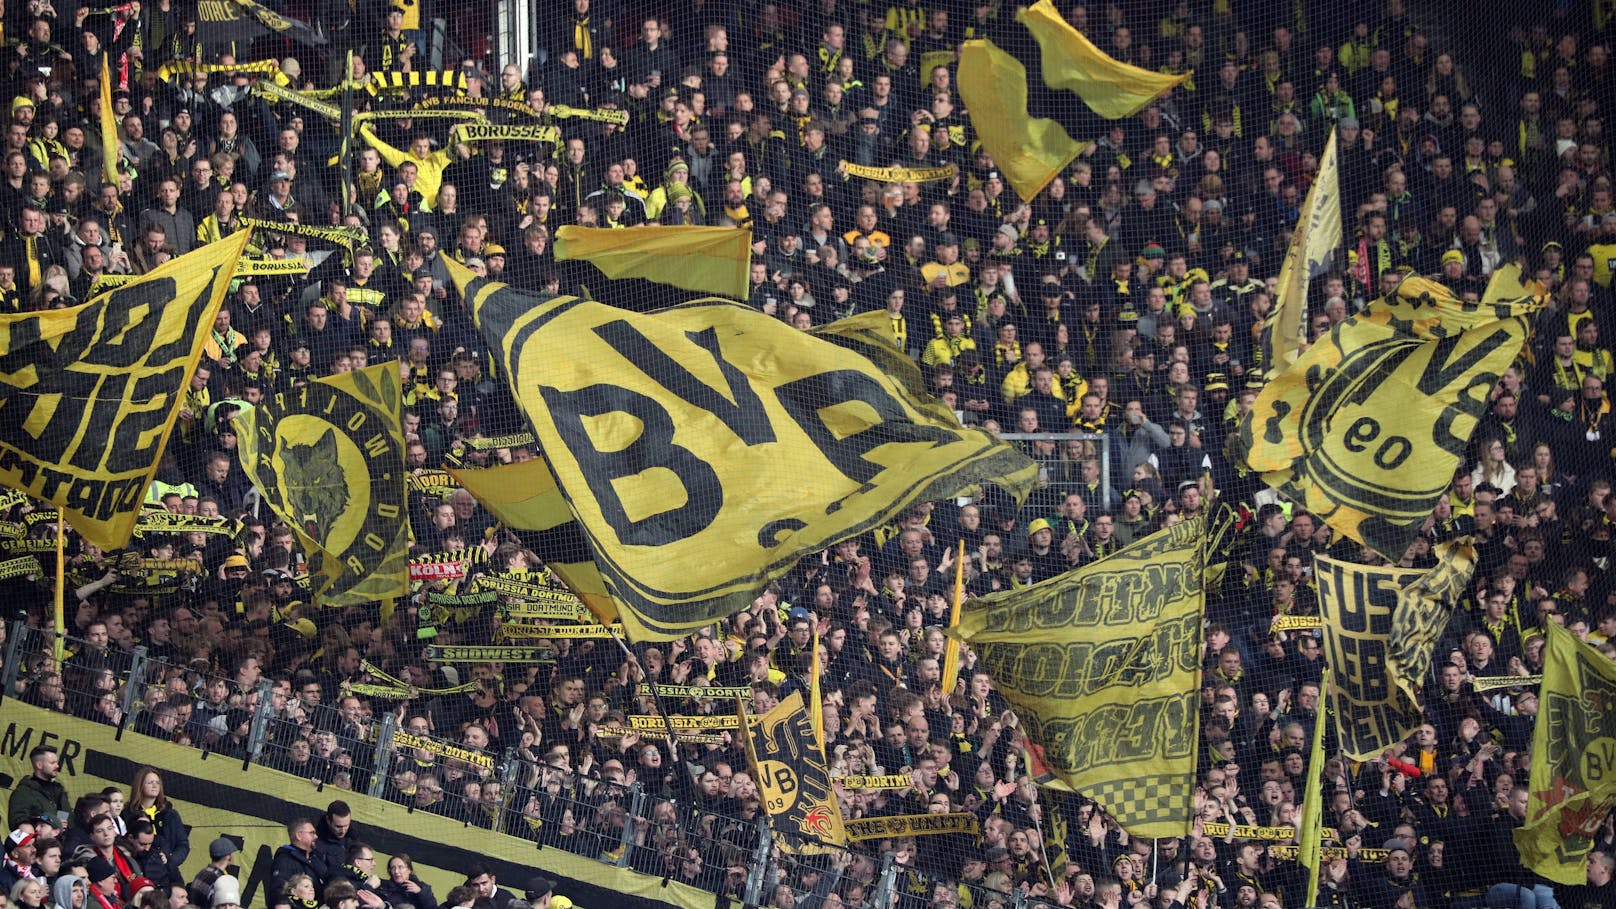 14-jähriges Dortmund-Talent nach Match gestorben